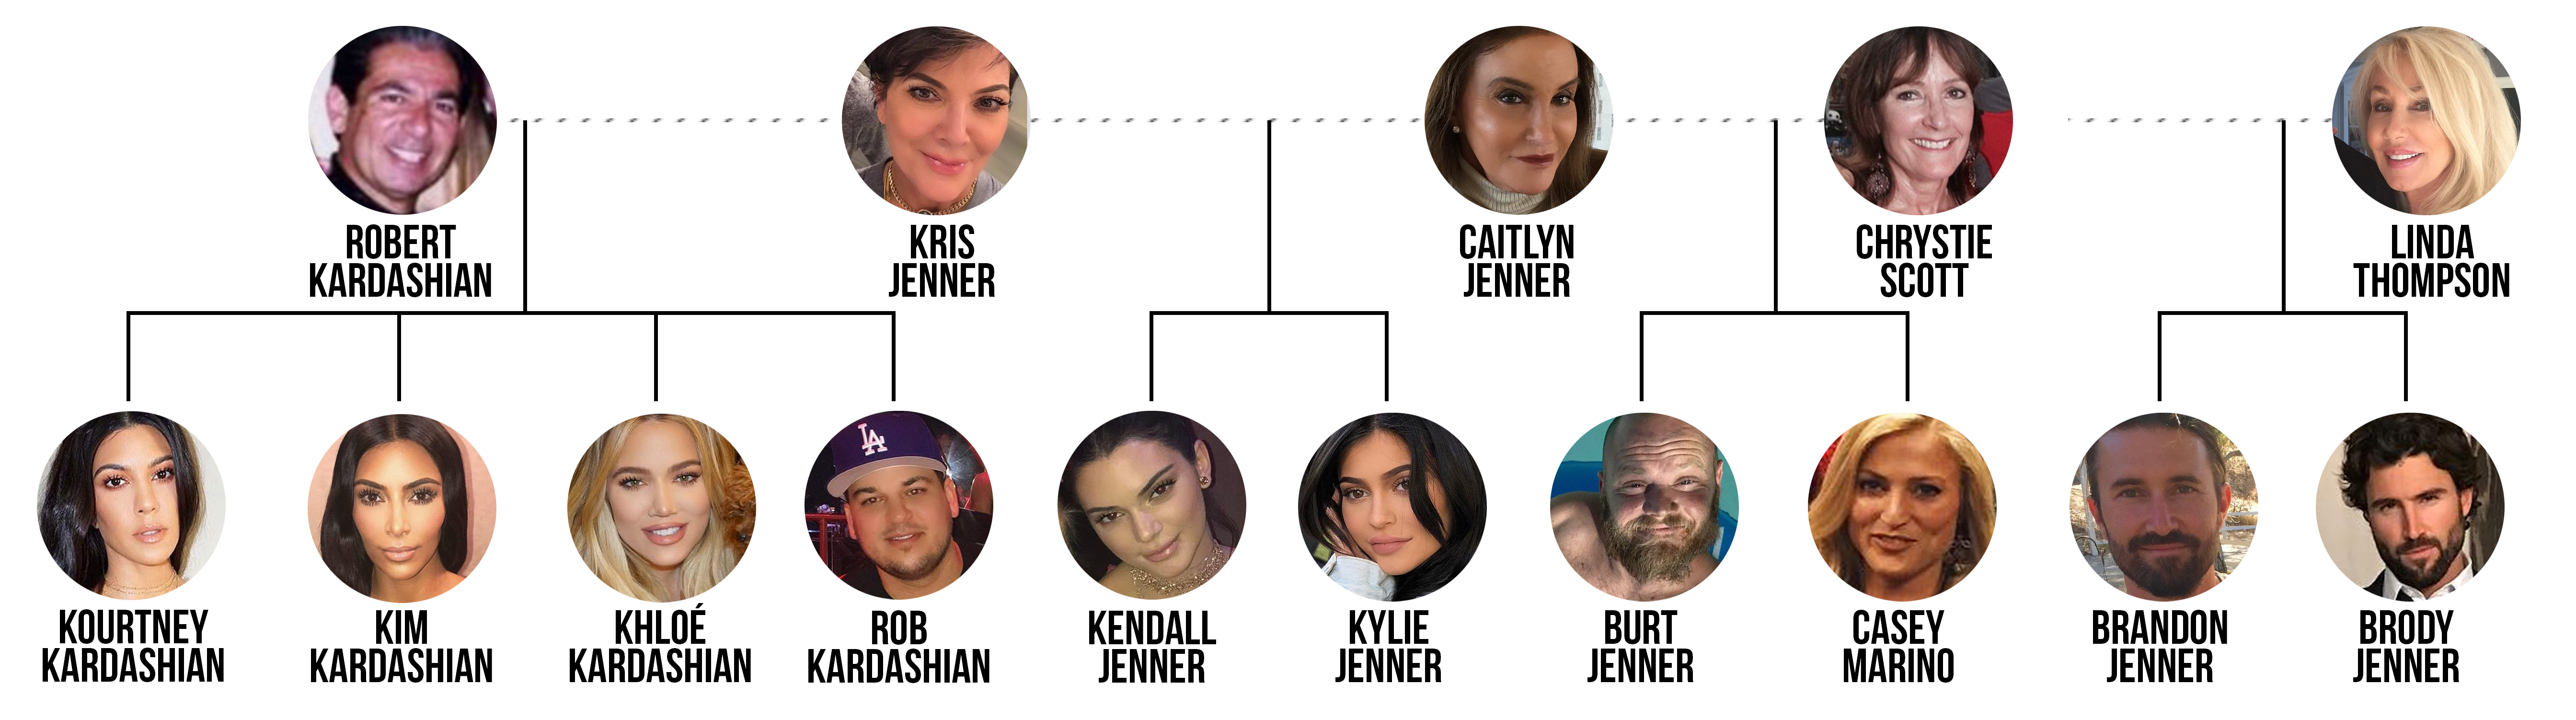 Bruce Jenner Family Tree